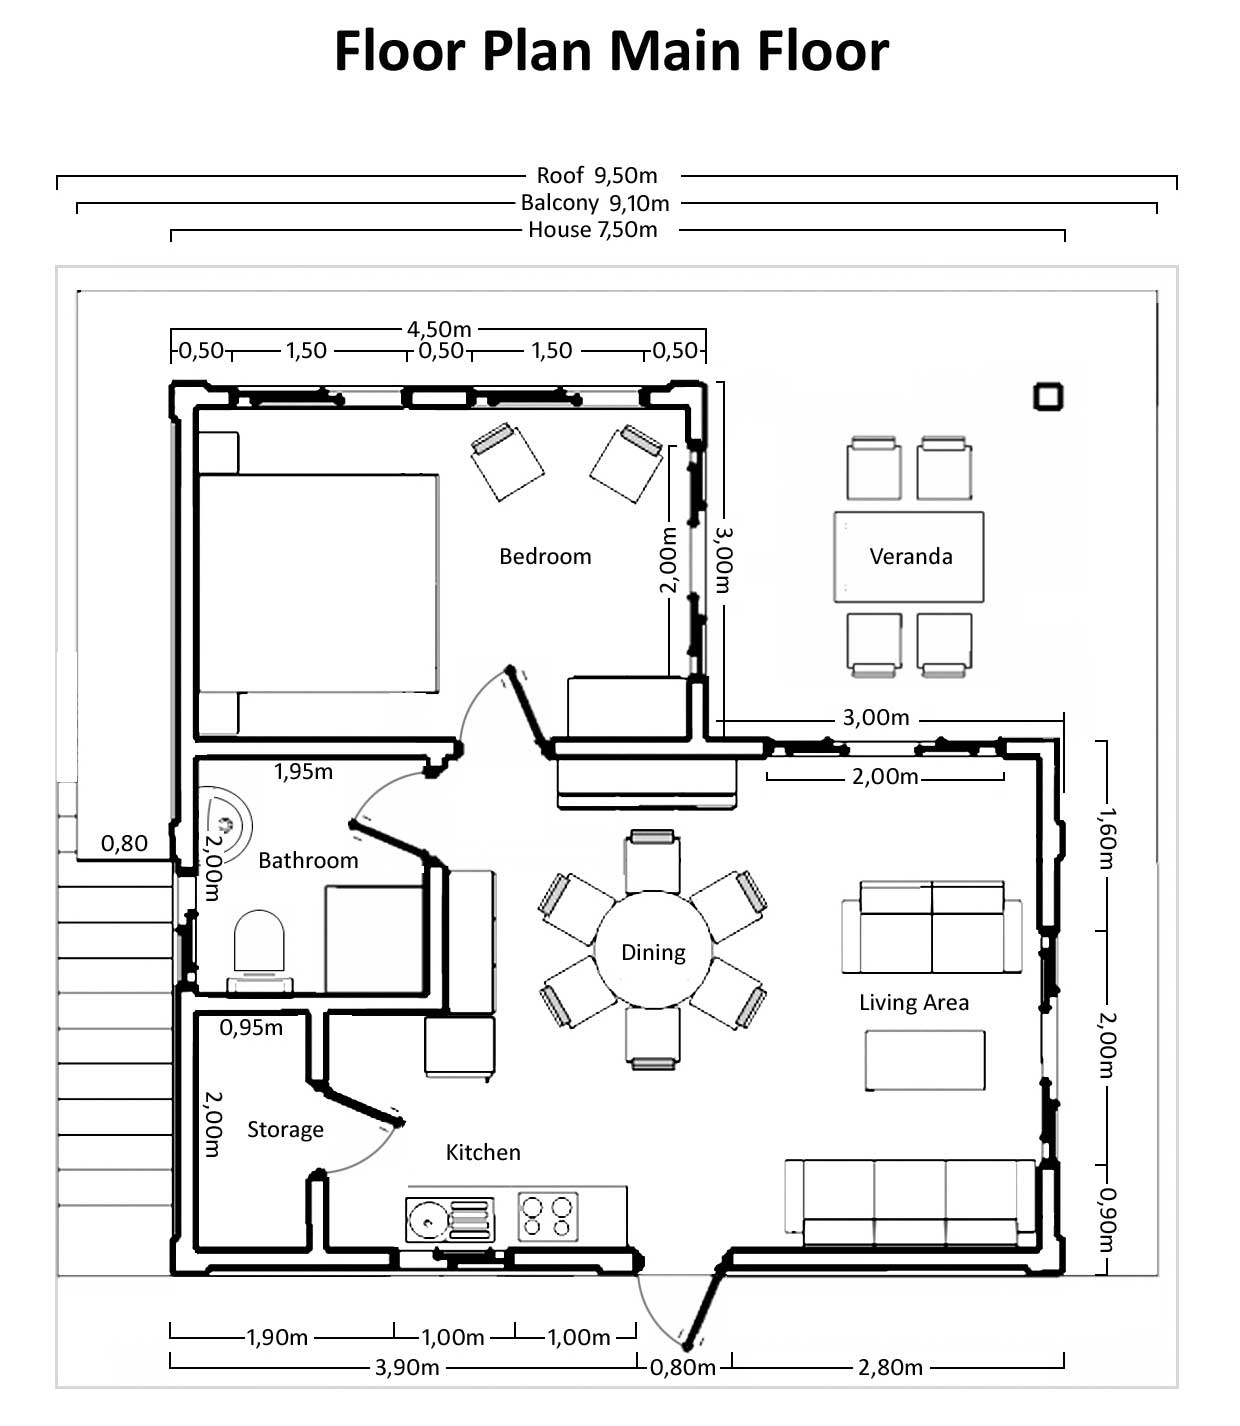 floor plan of main floor